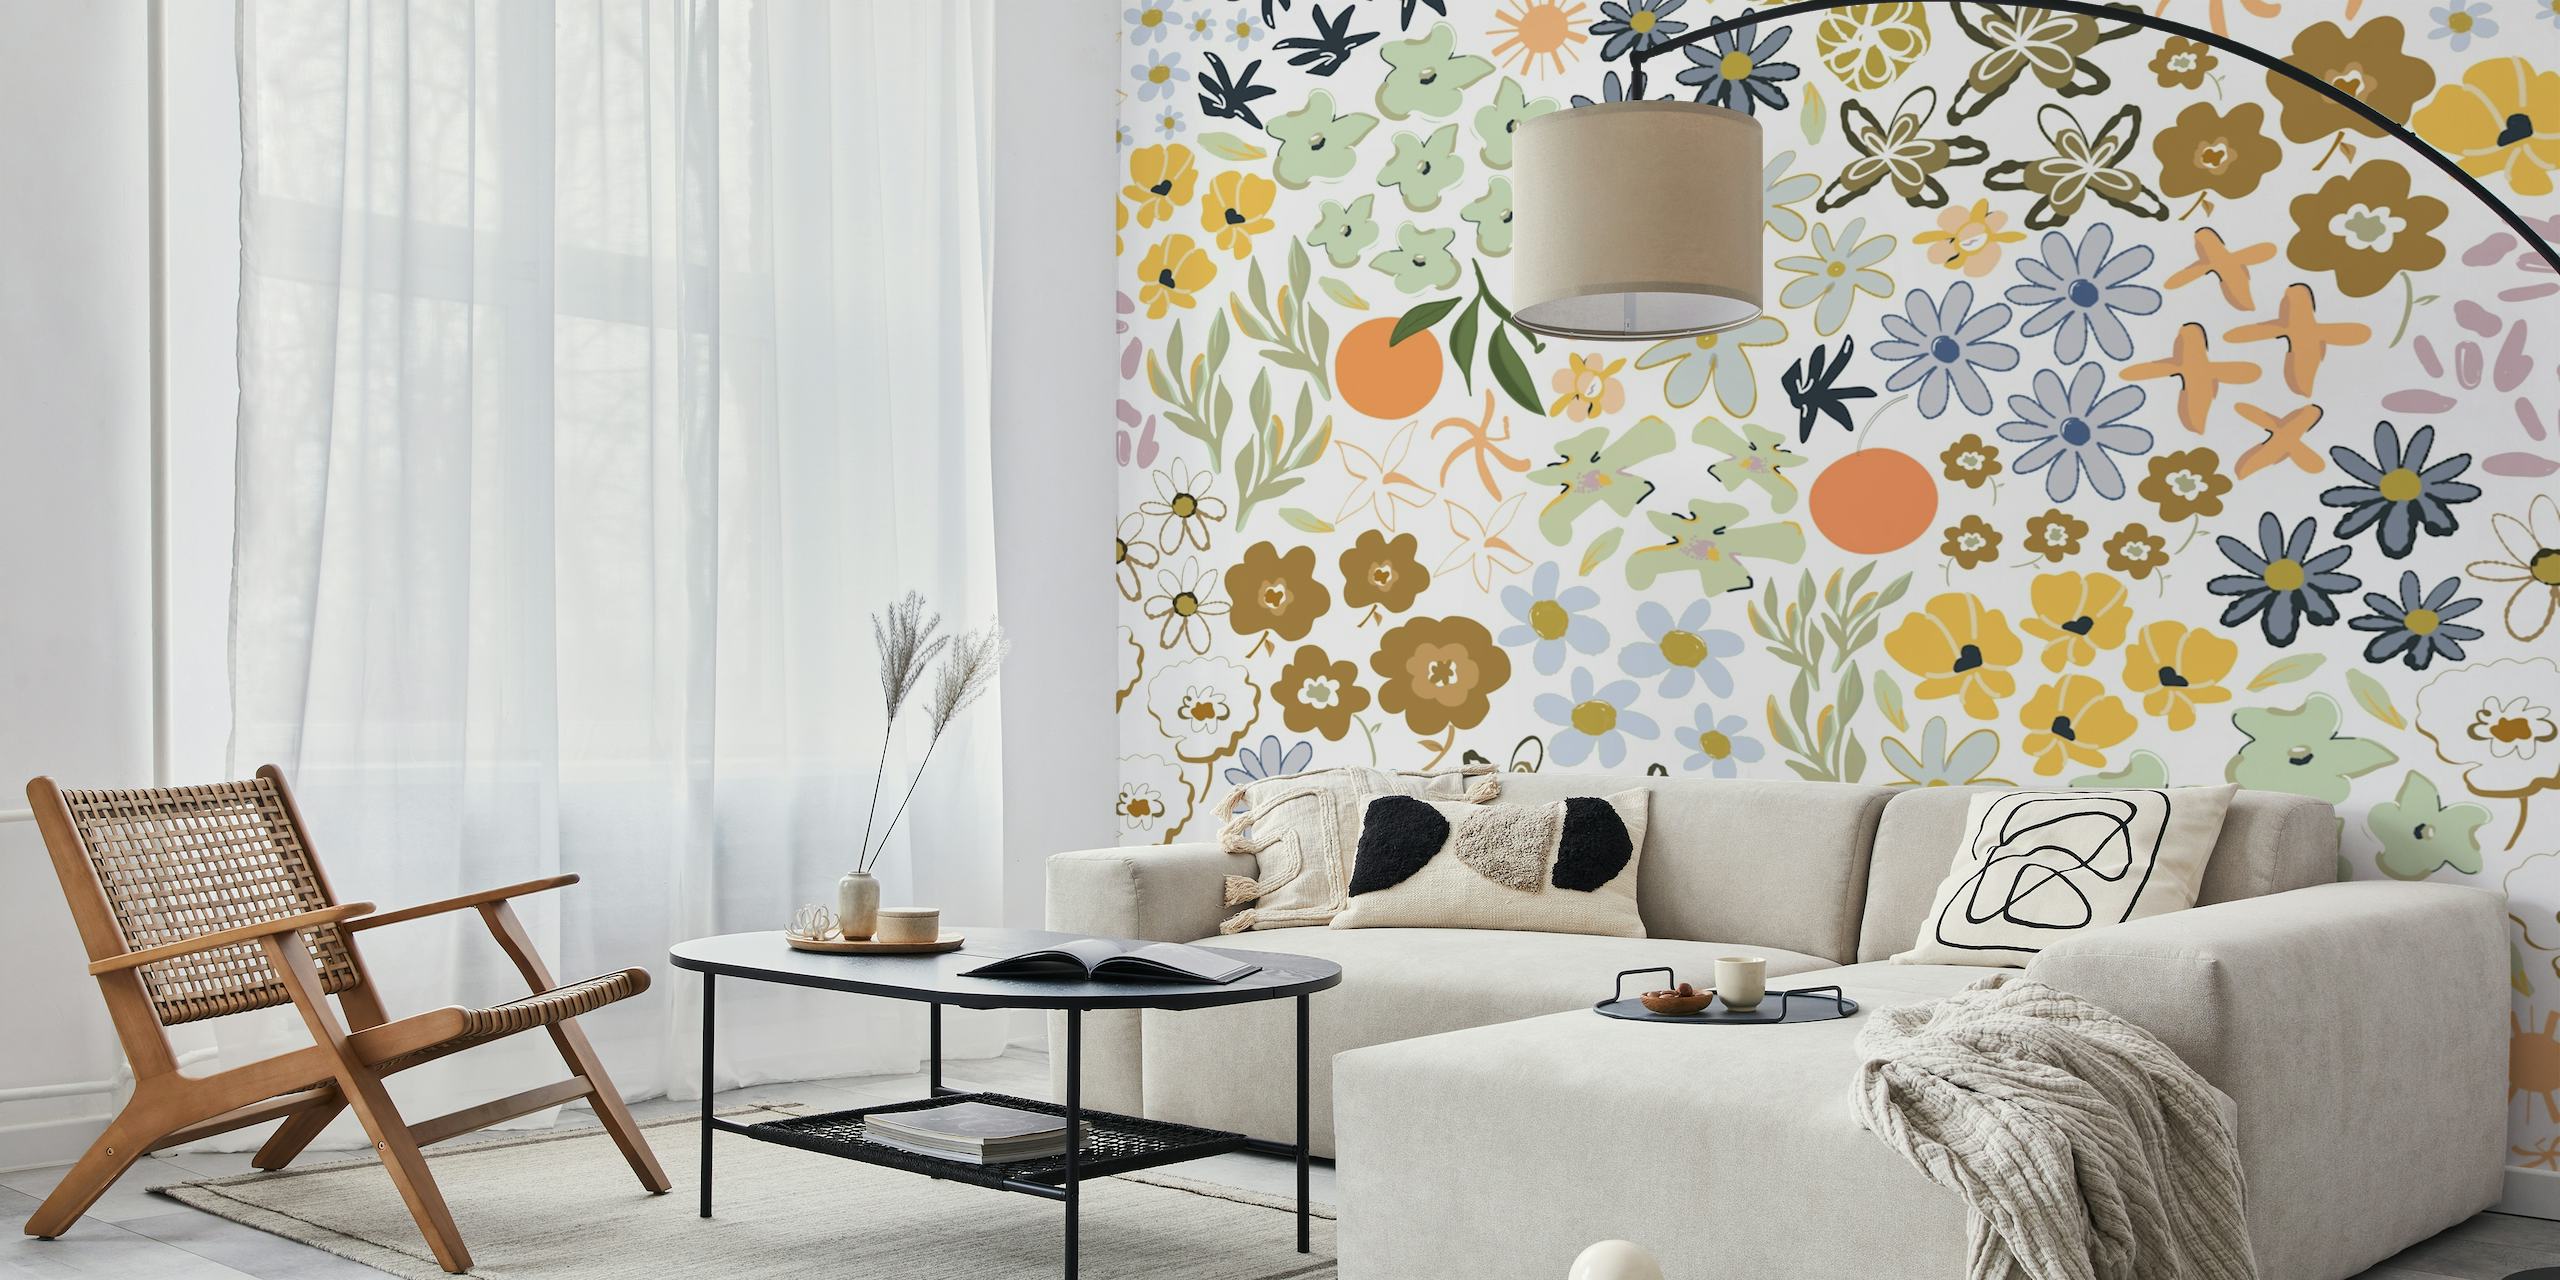 Kleurrijke, ditsy bloemmotief muurschildering met bloemen, insecten en fruit